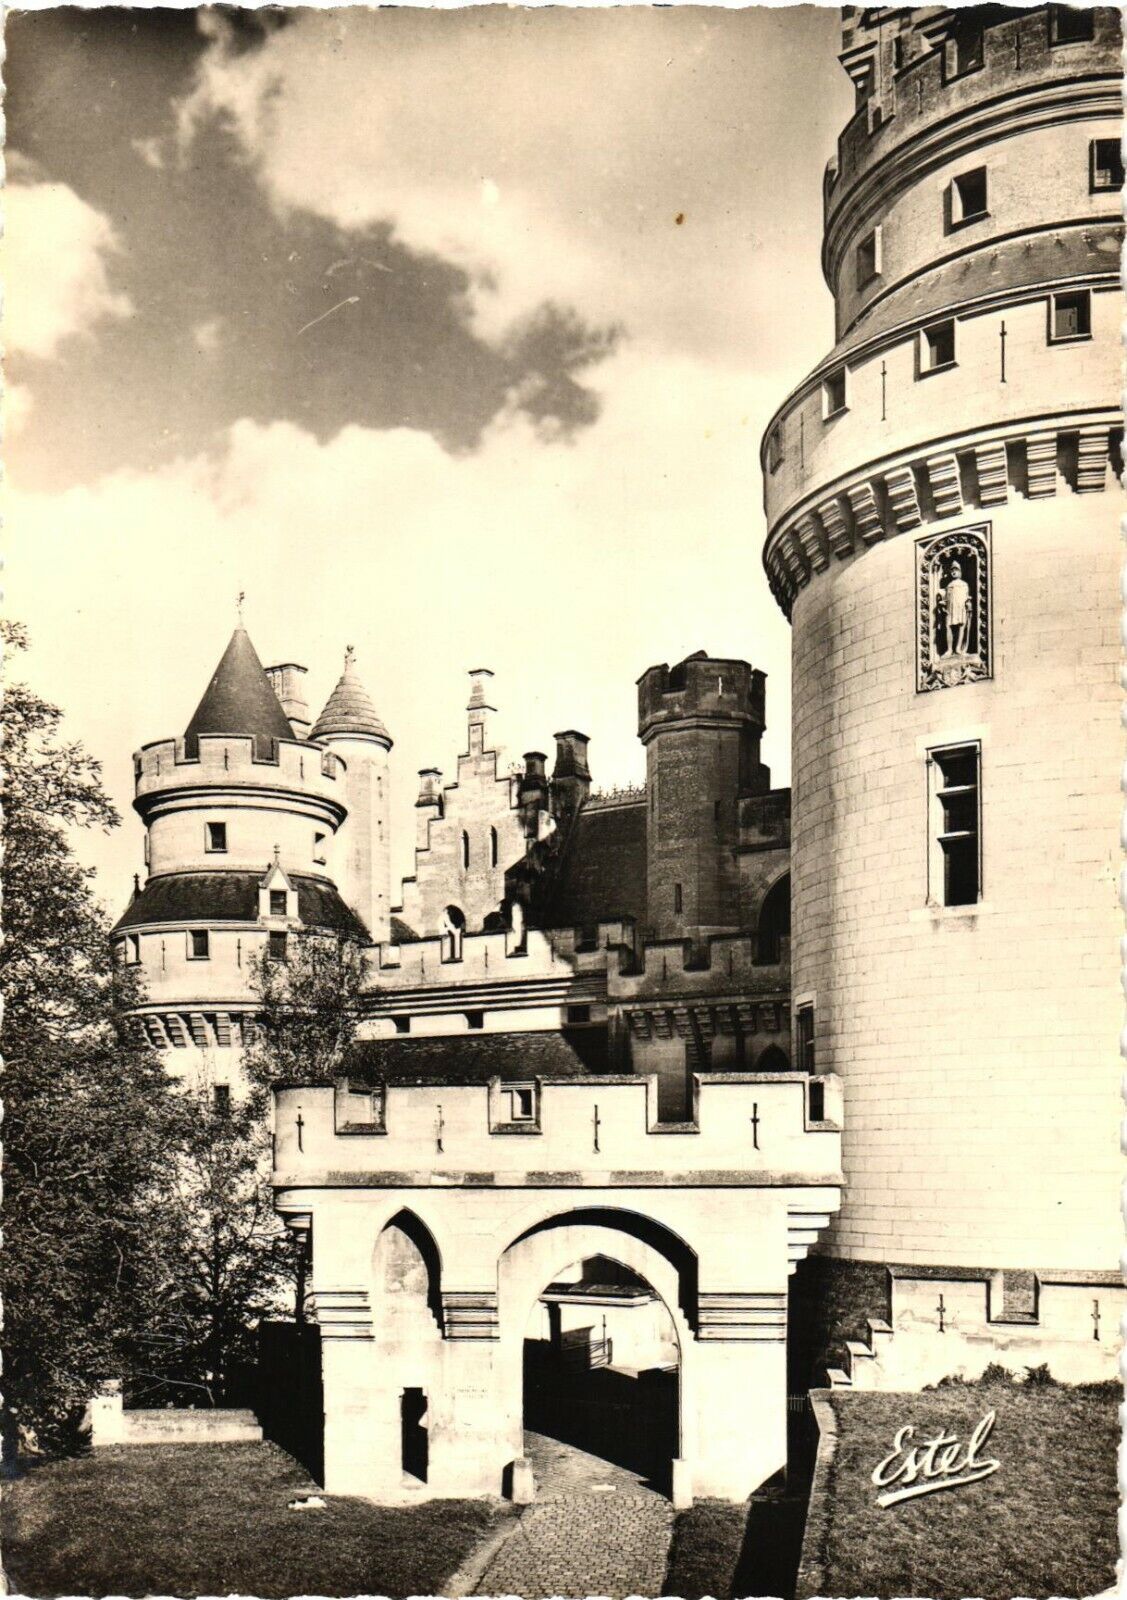 The Château And Artus Tower, Château de Pierrefonds, France Postcard